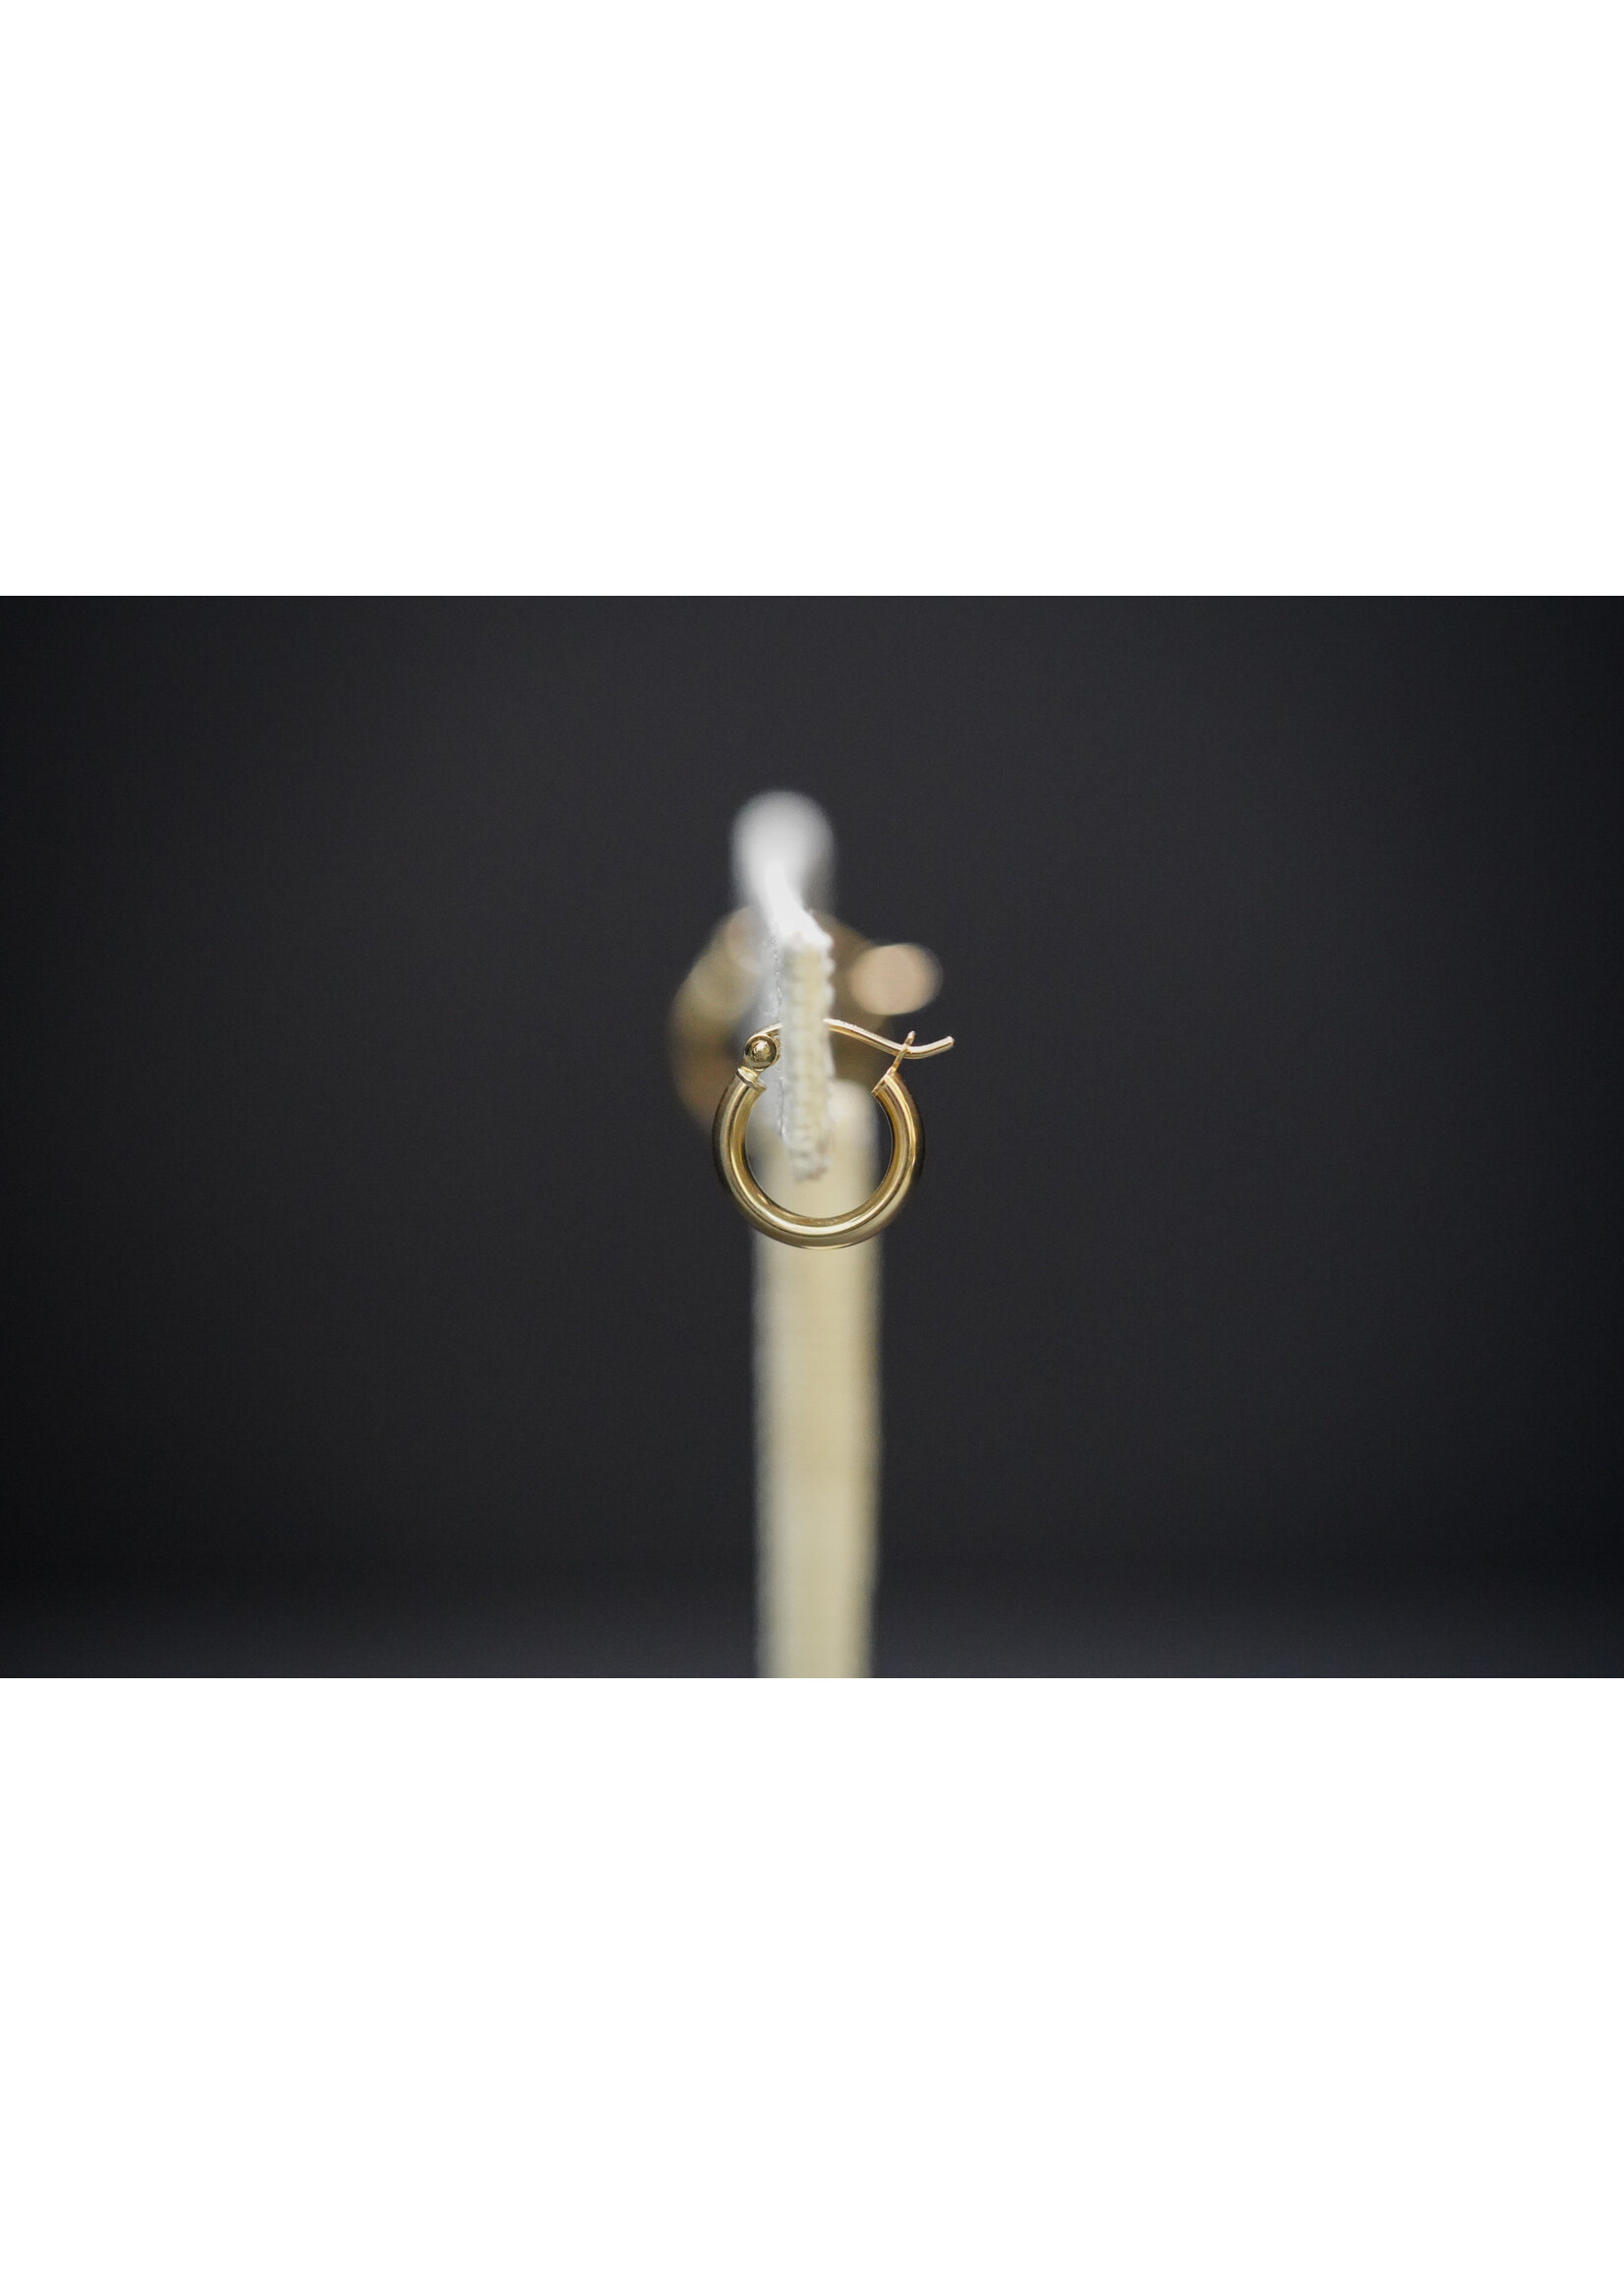 10KY .68g 13mm Gold Hoop Earrings